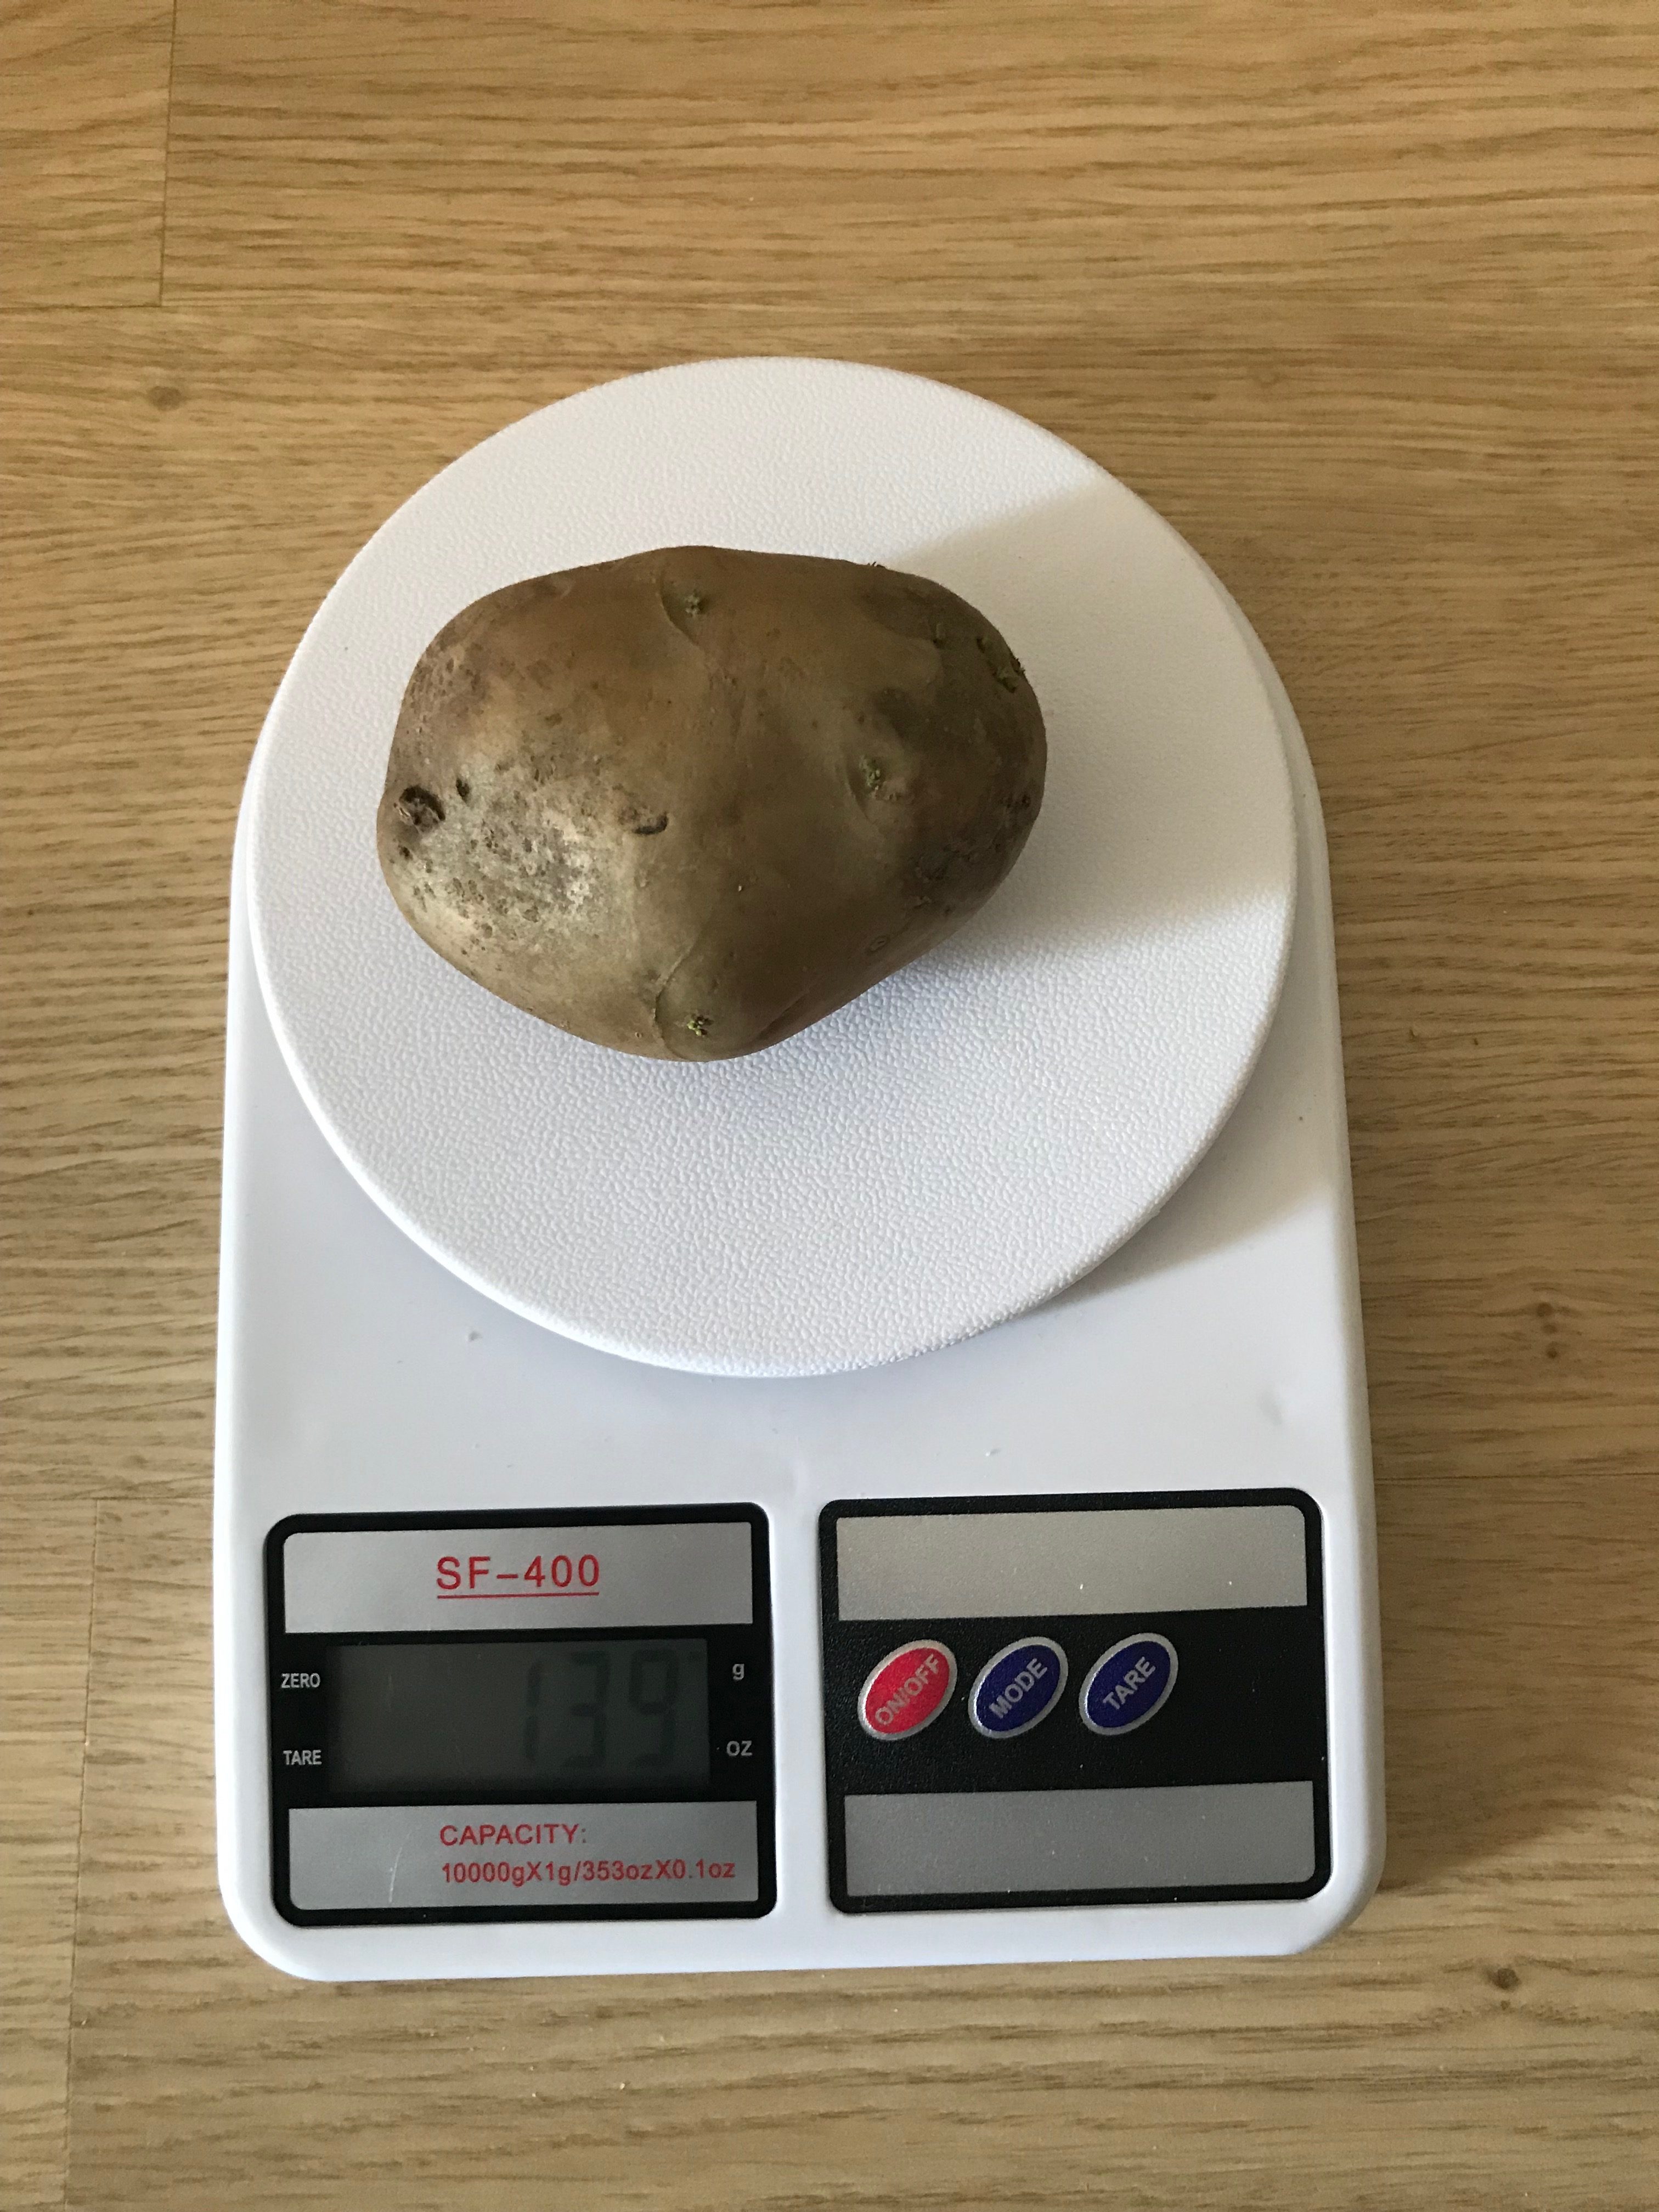 Cik sver viens vidējais kartupelis?